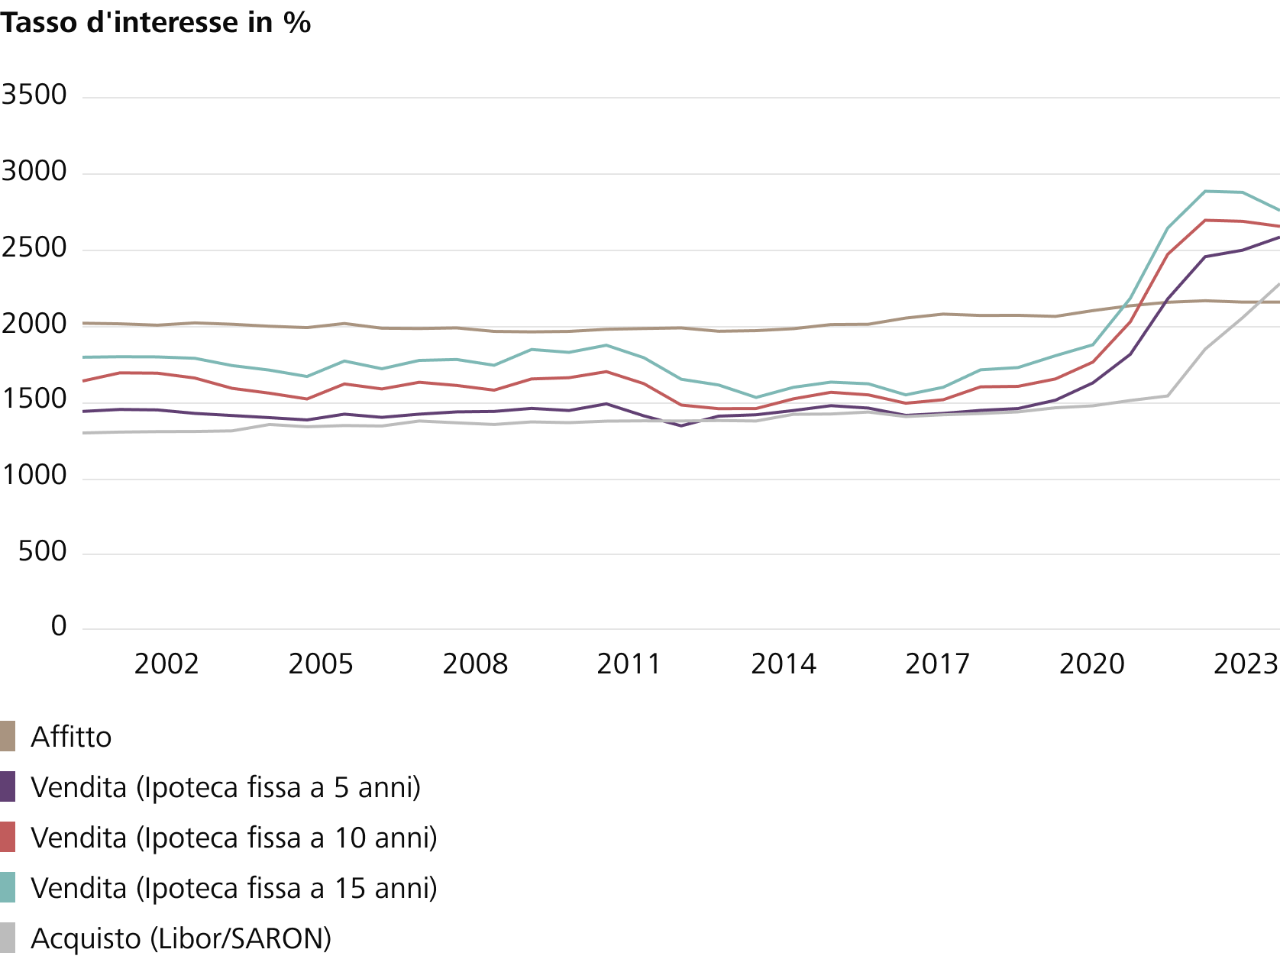 Panoramica statistica degli affitti rispetto agli acquisti dal 2015 al 2023 in Svizzera